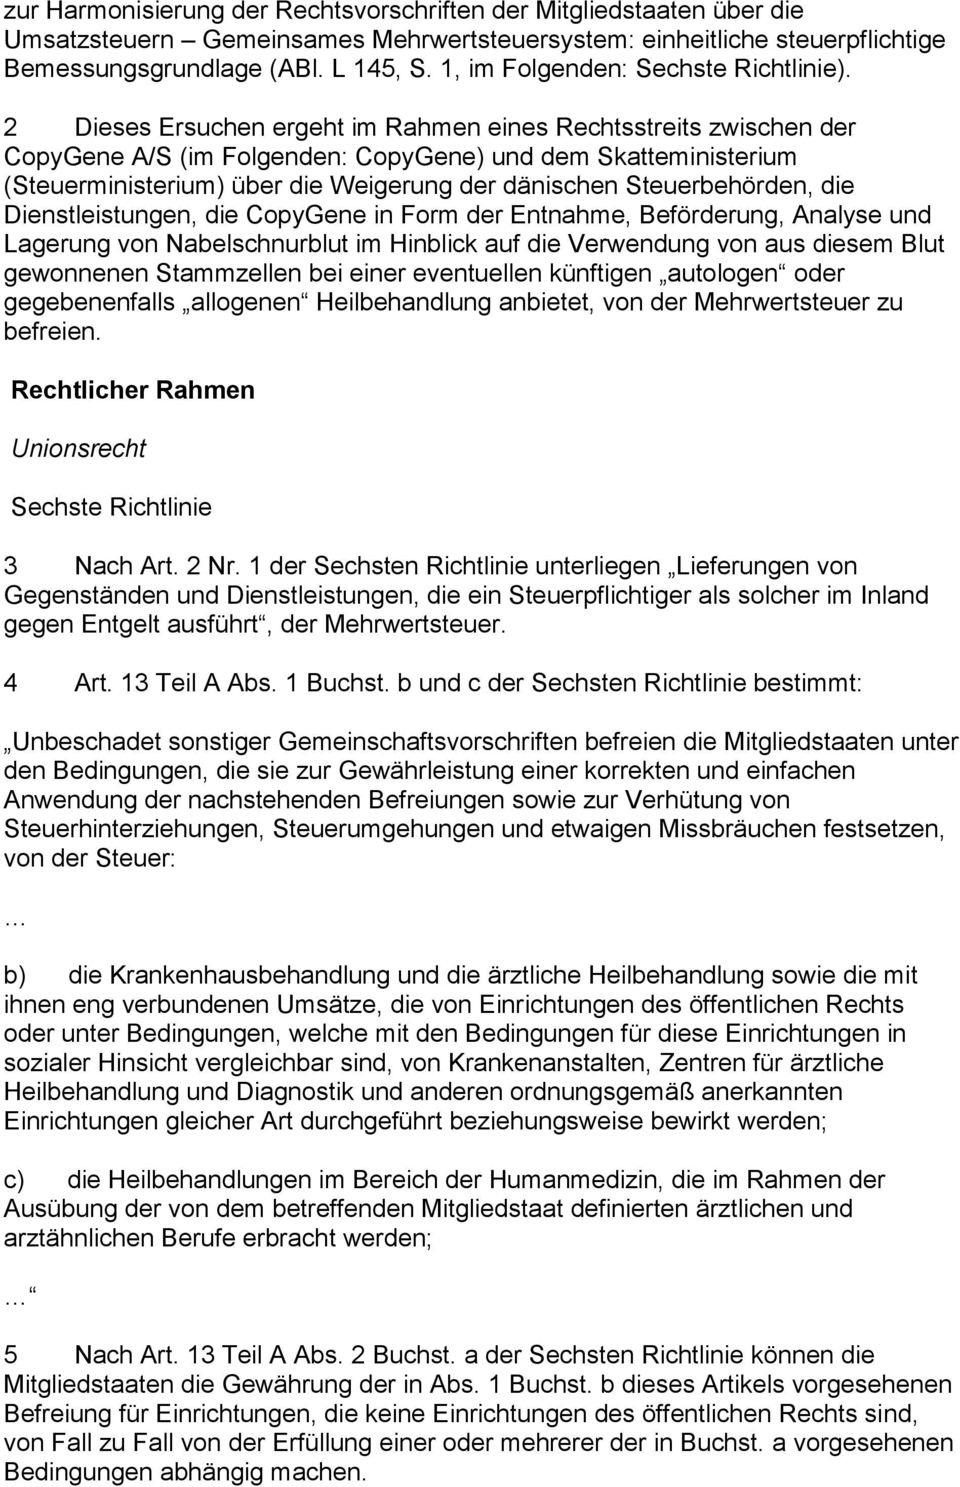 2 Dieses Ersuchen ergeht im Rahmen eines Rechtsstreits zwischen der CopyGene A/S (im Folgenden: CopyGene) und dem Skatteministerium (Steuerministerium) über die Weigerung der dänischen